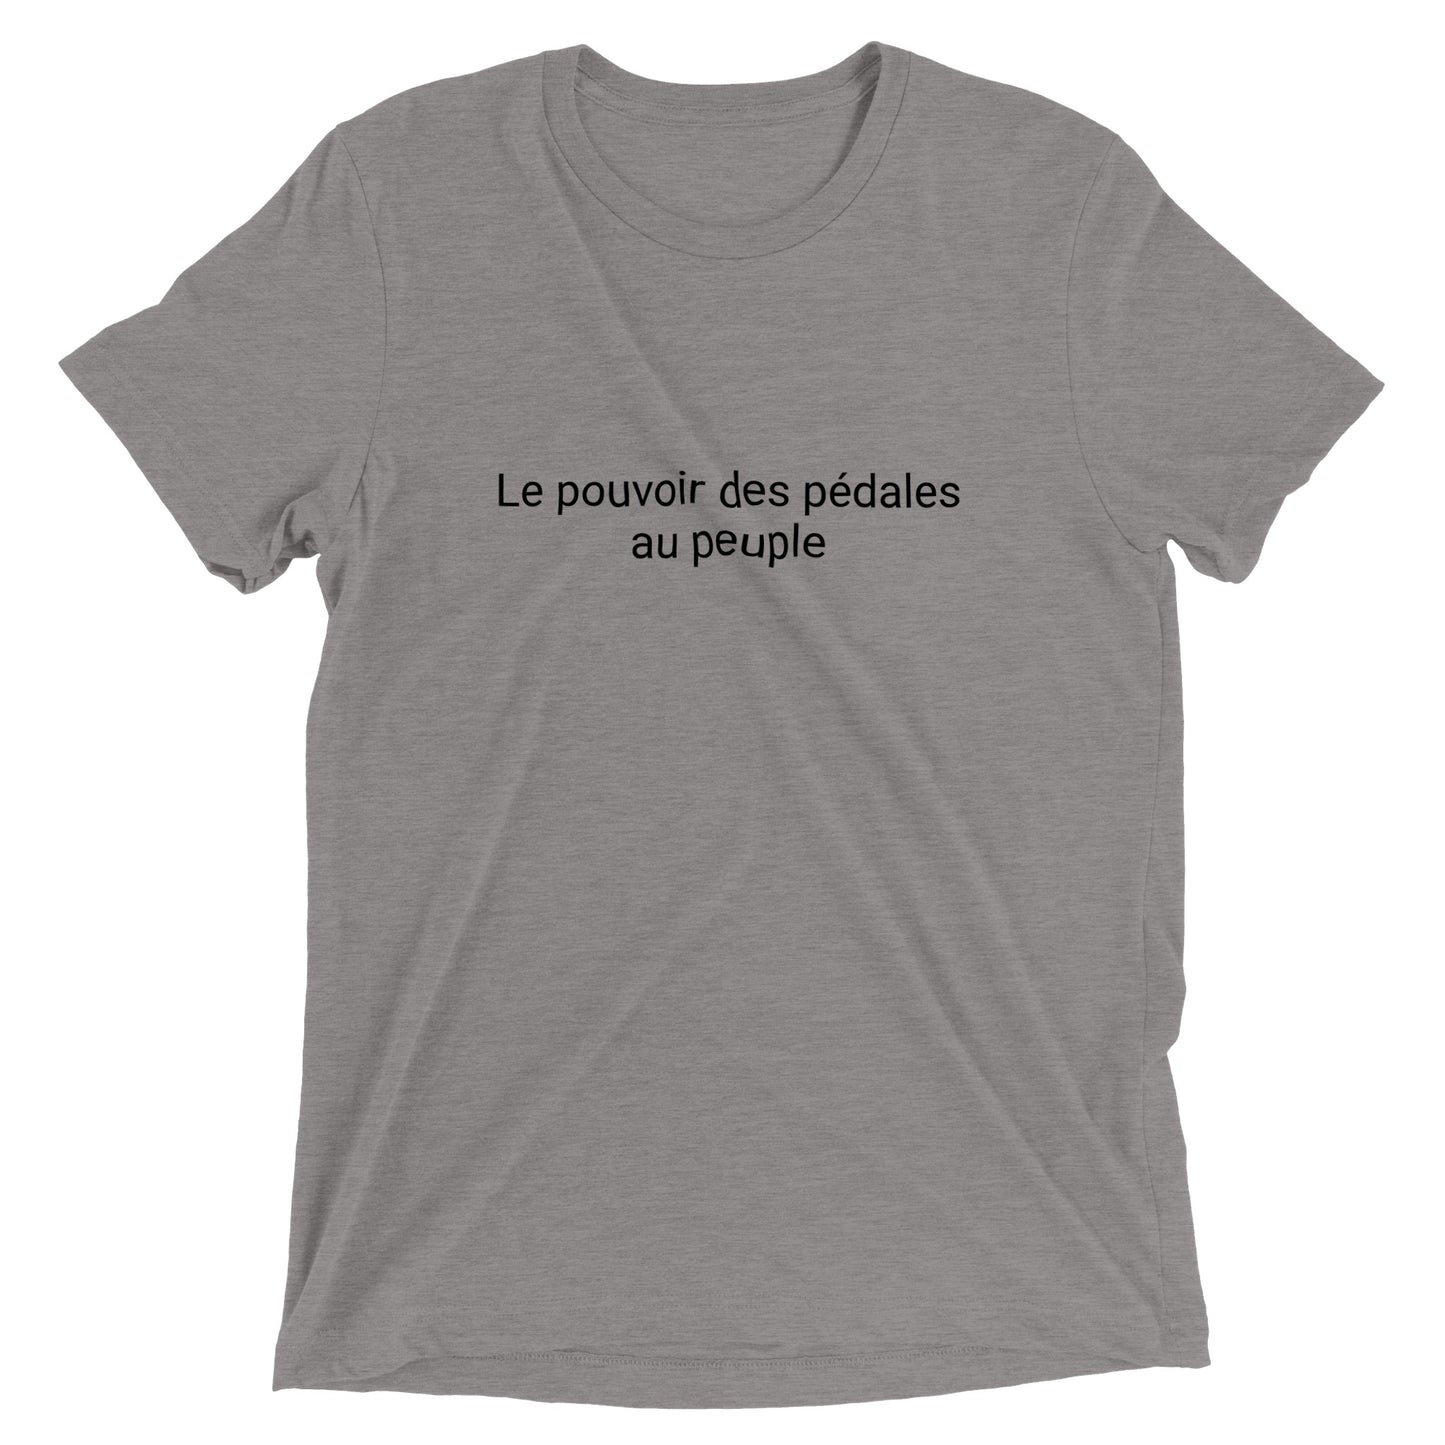 Le pouvoir des pédales au peuple - Camiseta de cuello redondo unisex Triblend